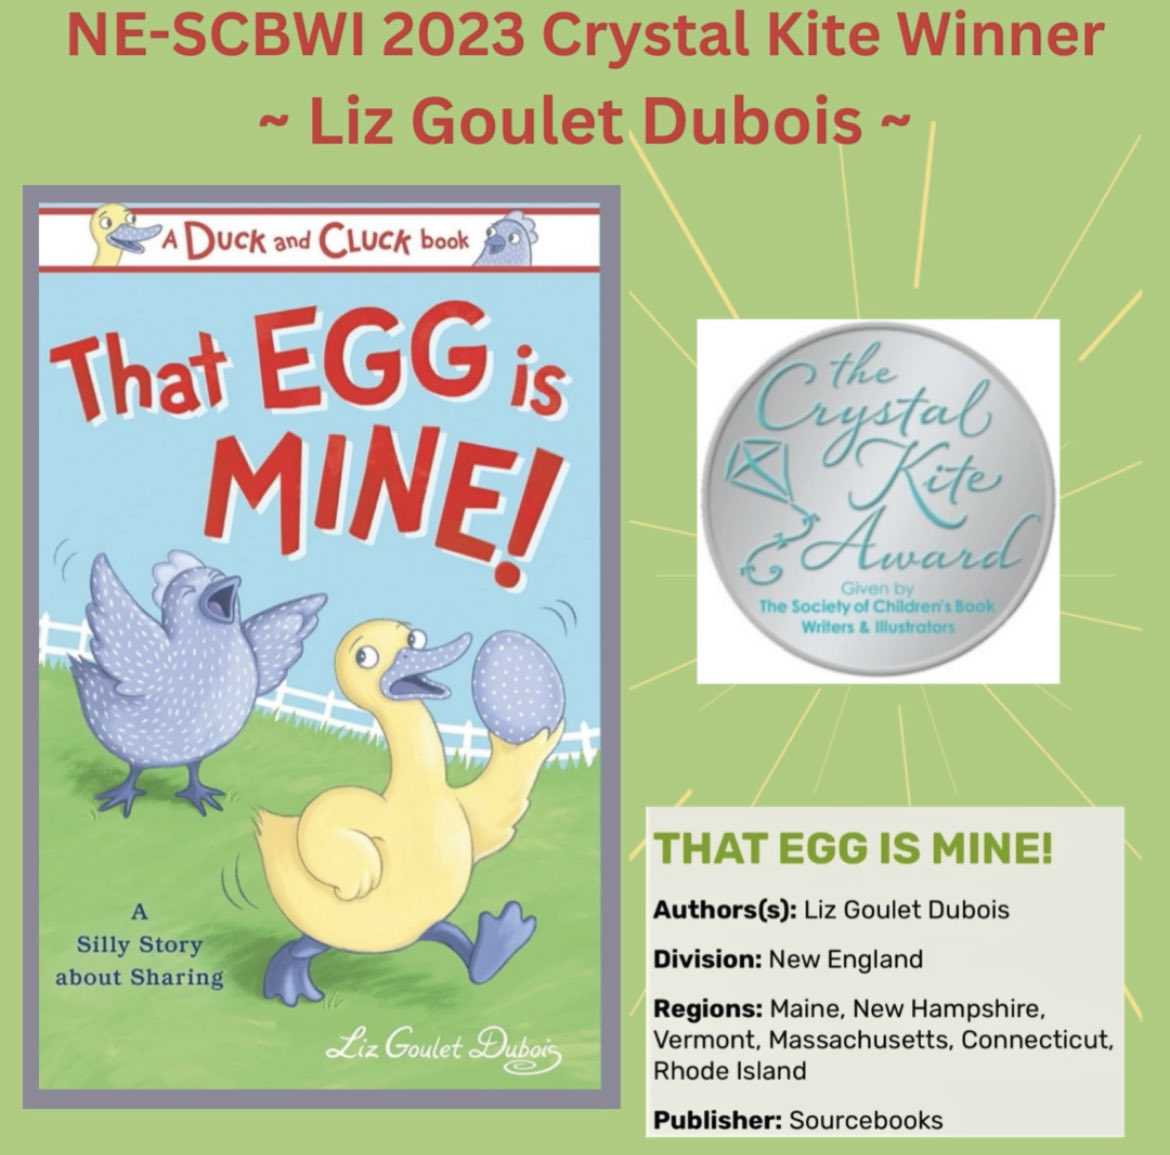 2023 Winner winner!! THAT EGG IS MINE - Duck & Cluck @lizgouletdubois New England Crystal Kite #nescbwi23 #nescbwi  #scbwi #crystalkite #pb #childrensbook